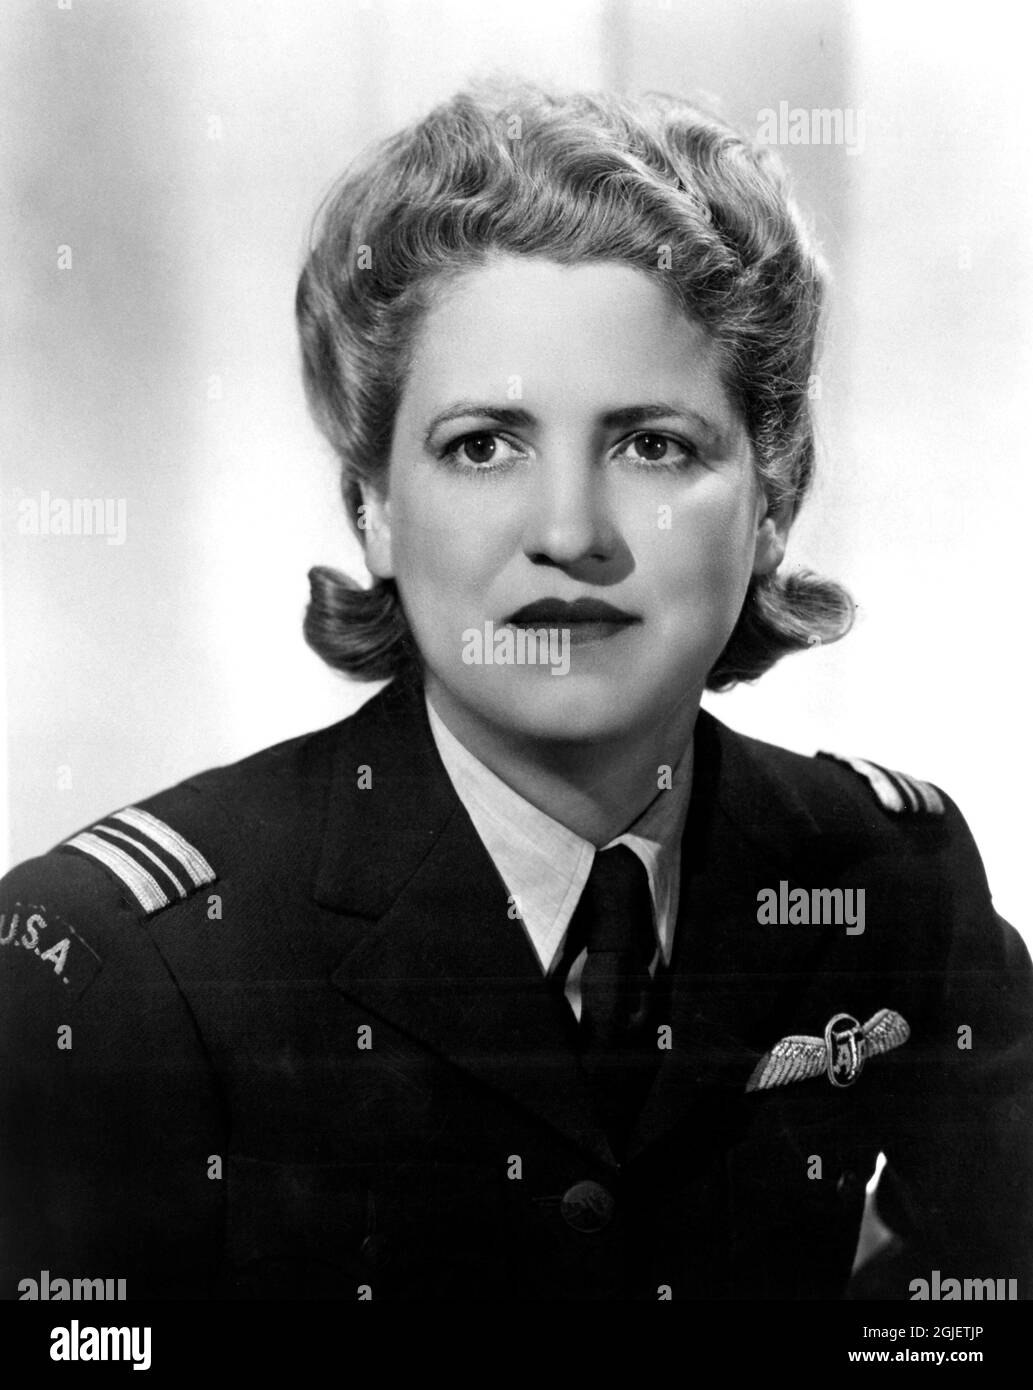 Retrato de la pionera de aviación estadounidense Jacqueline Cochran (1906-1980) en el uniforme auxiliar de transporte aéreo, 1942. Foto de stock